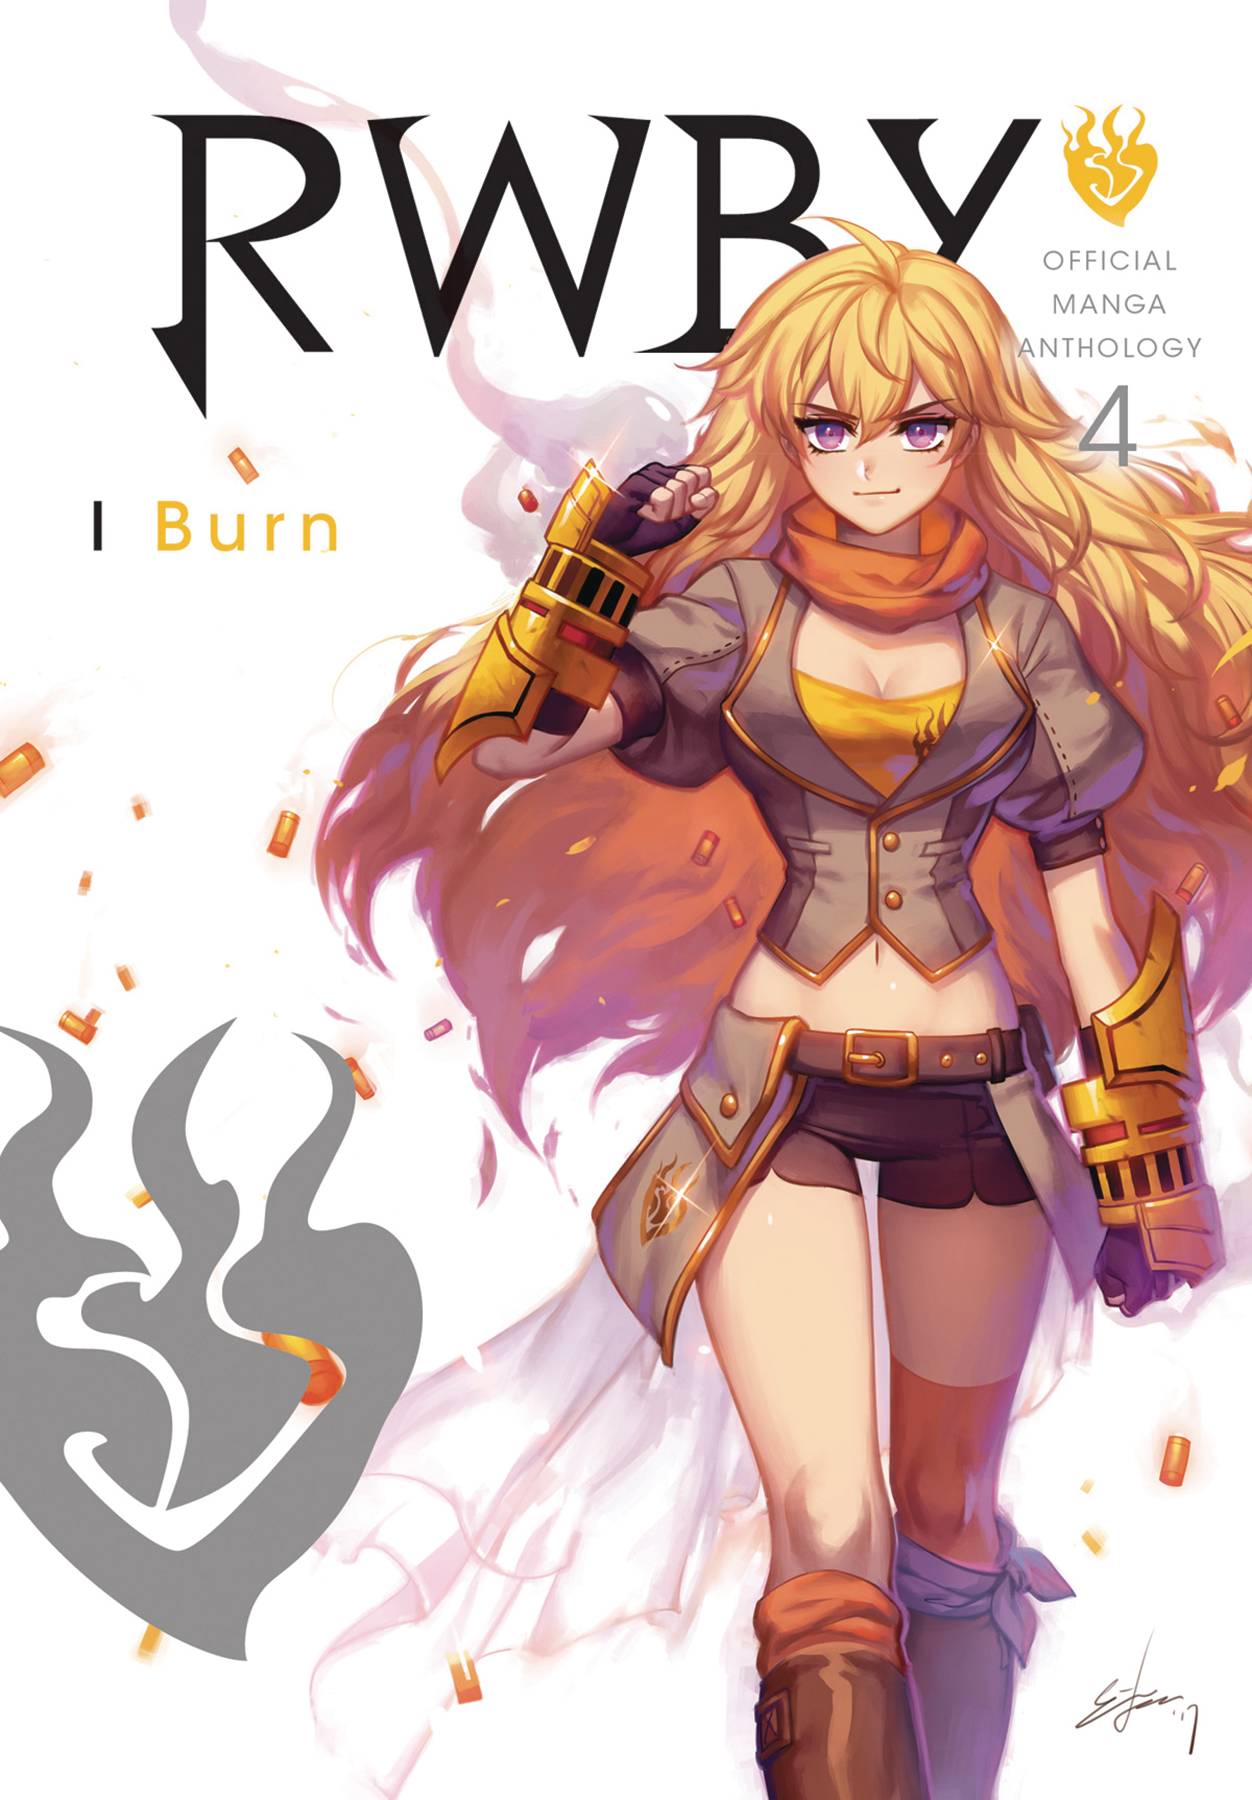 Rwby Official Manga Anthology Manga Volume 4